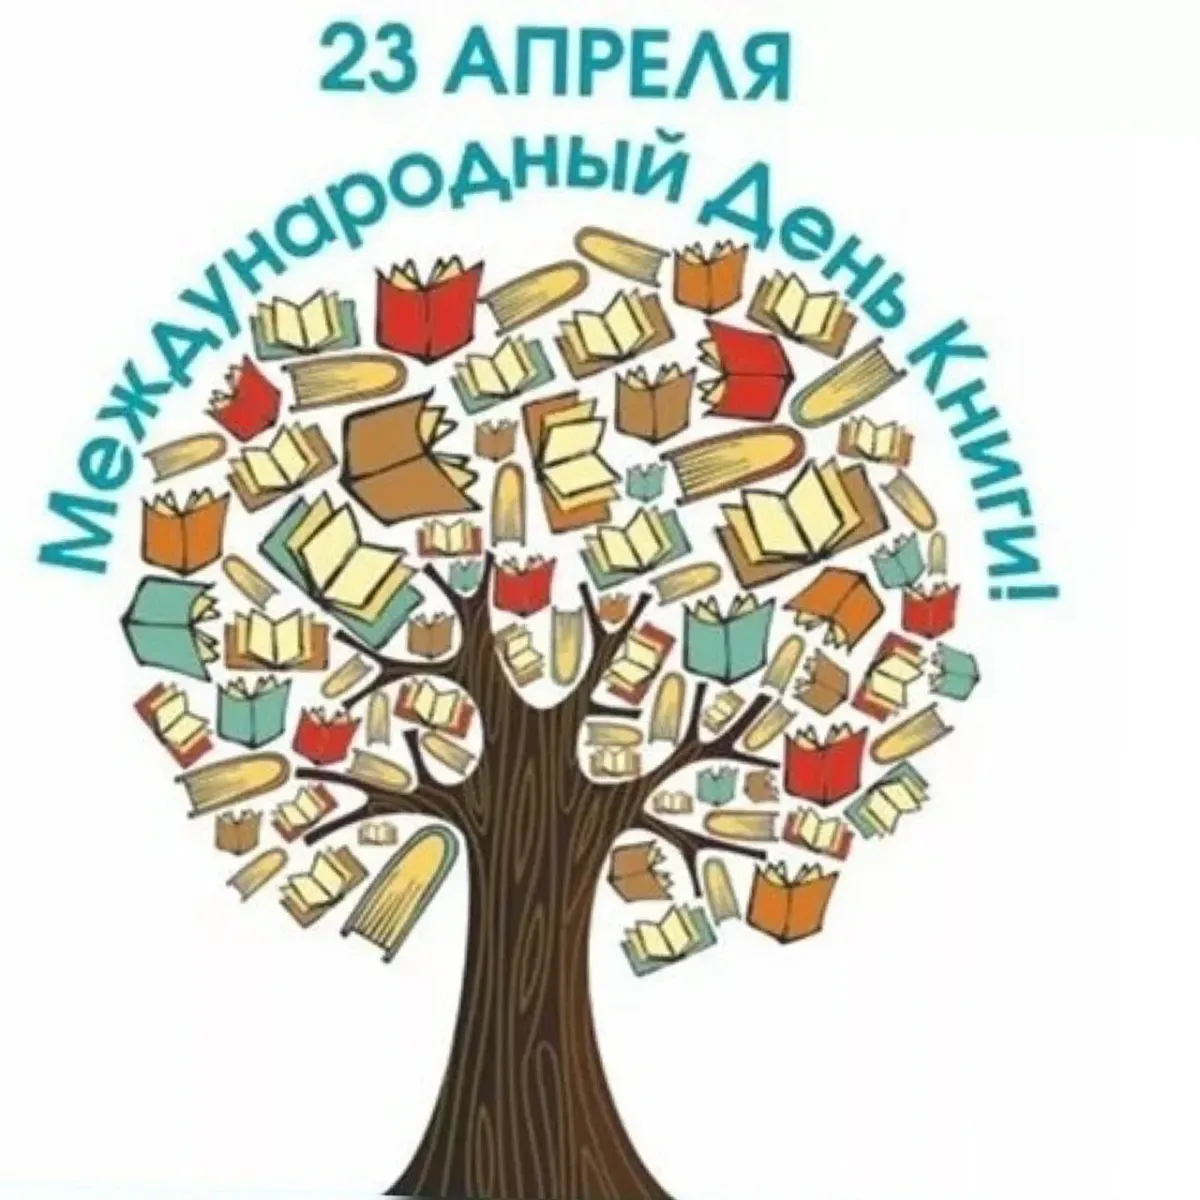 23 апреля всемирный день книг и авторского